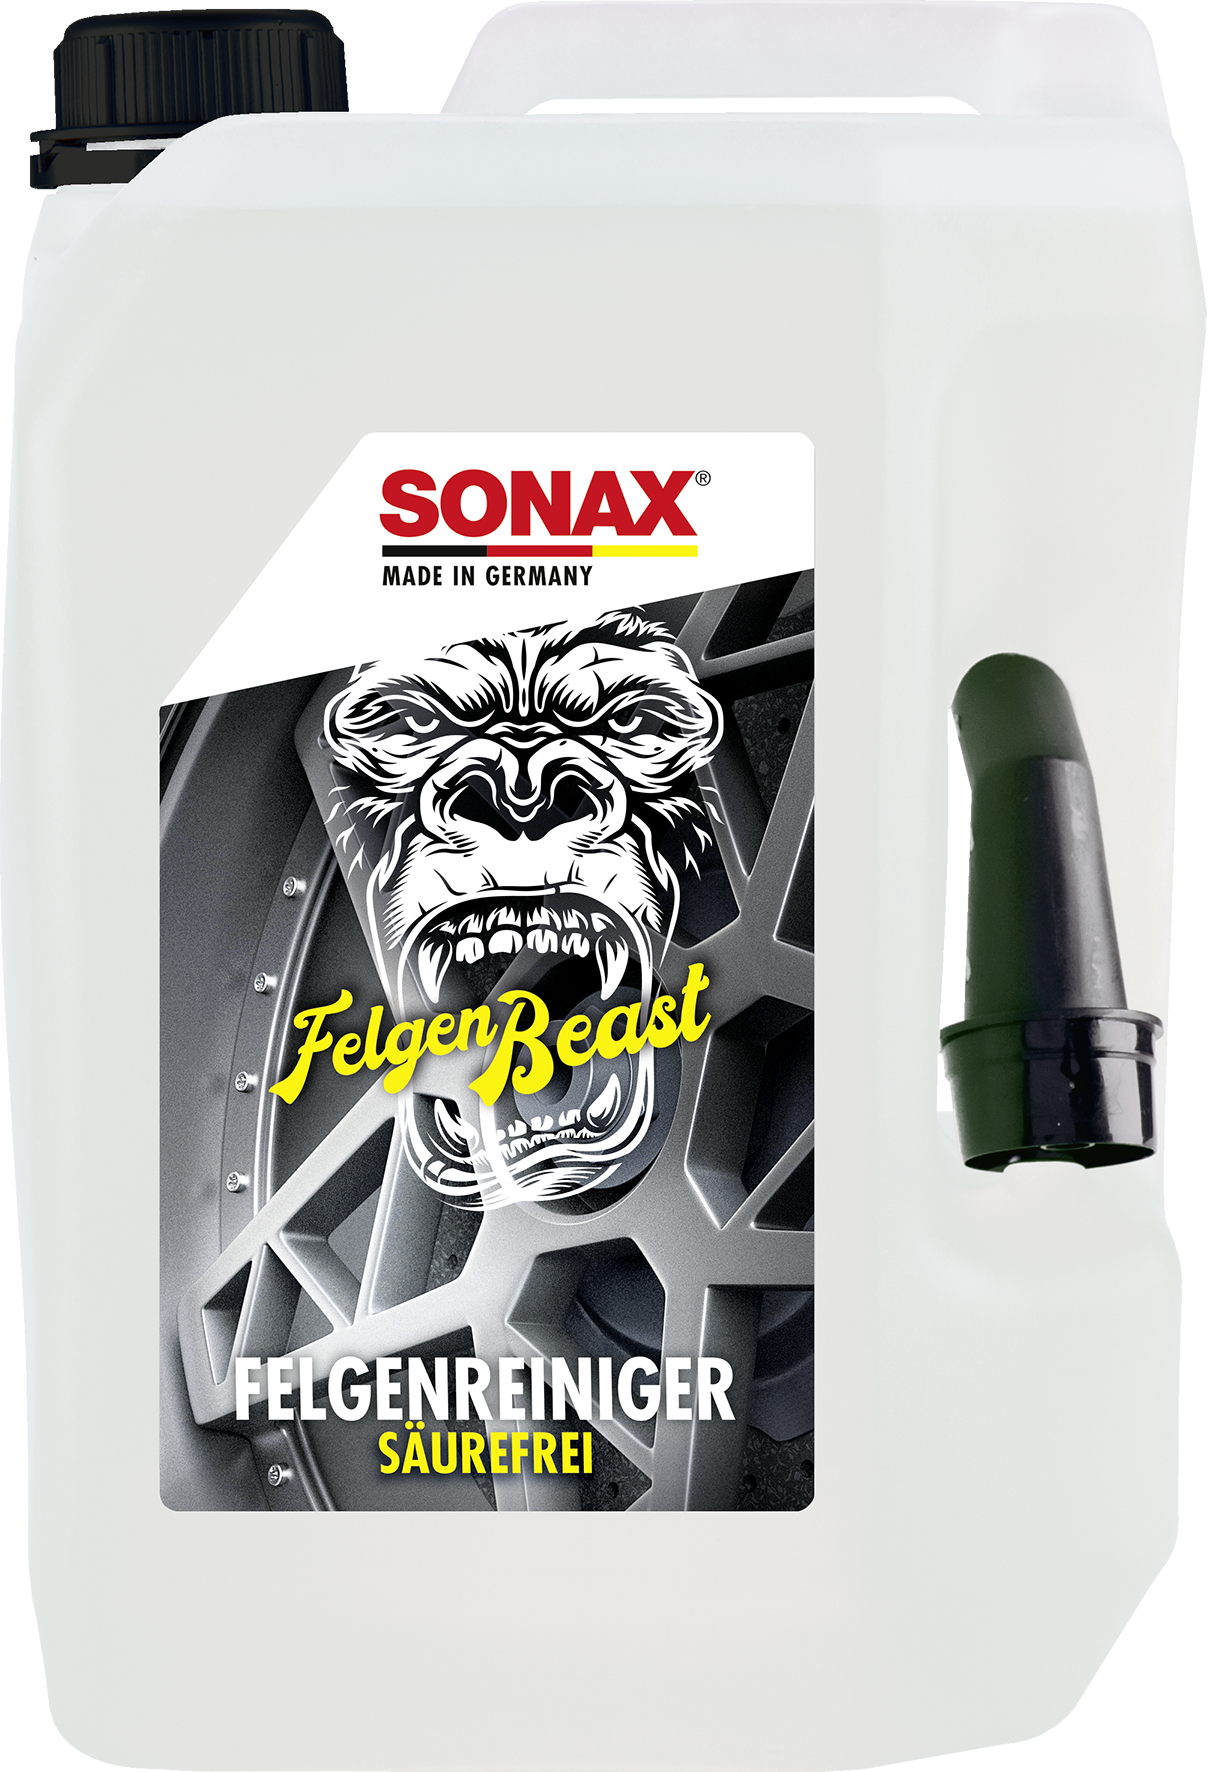 SONAX FelgenBeast - Weigola Hygienevertrieb -  - Weigola Hygienevertrieb